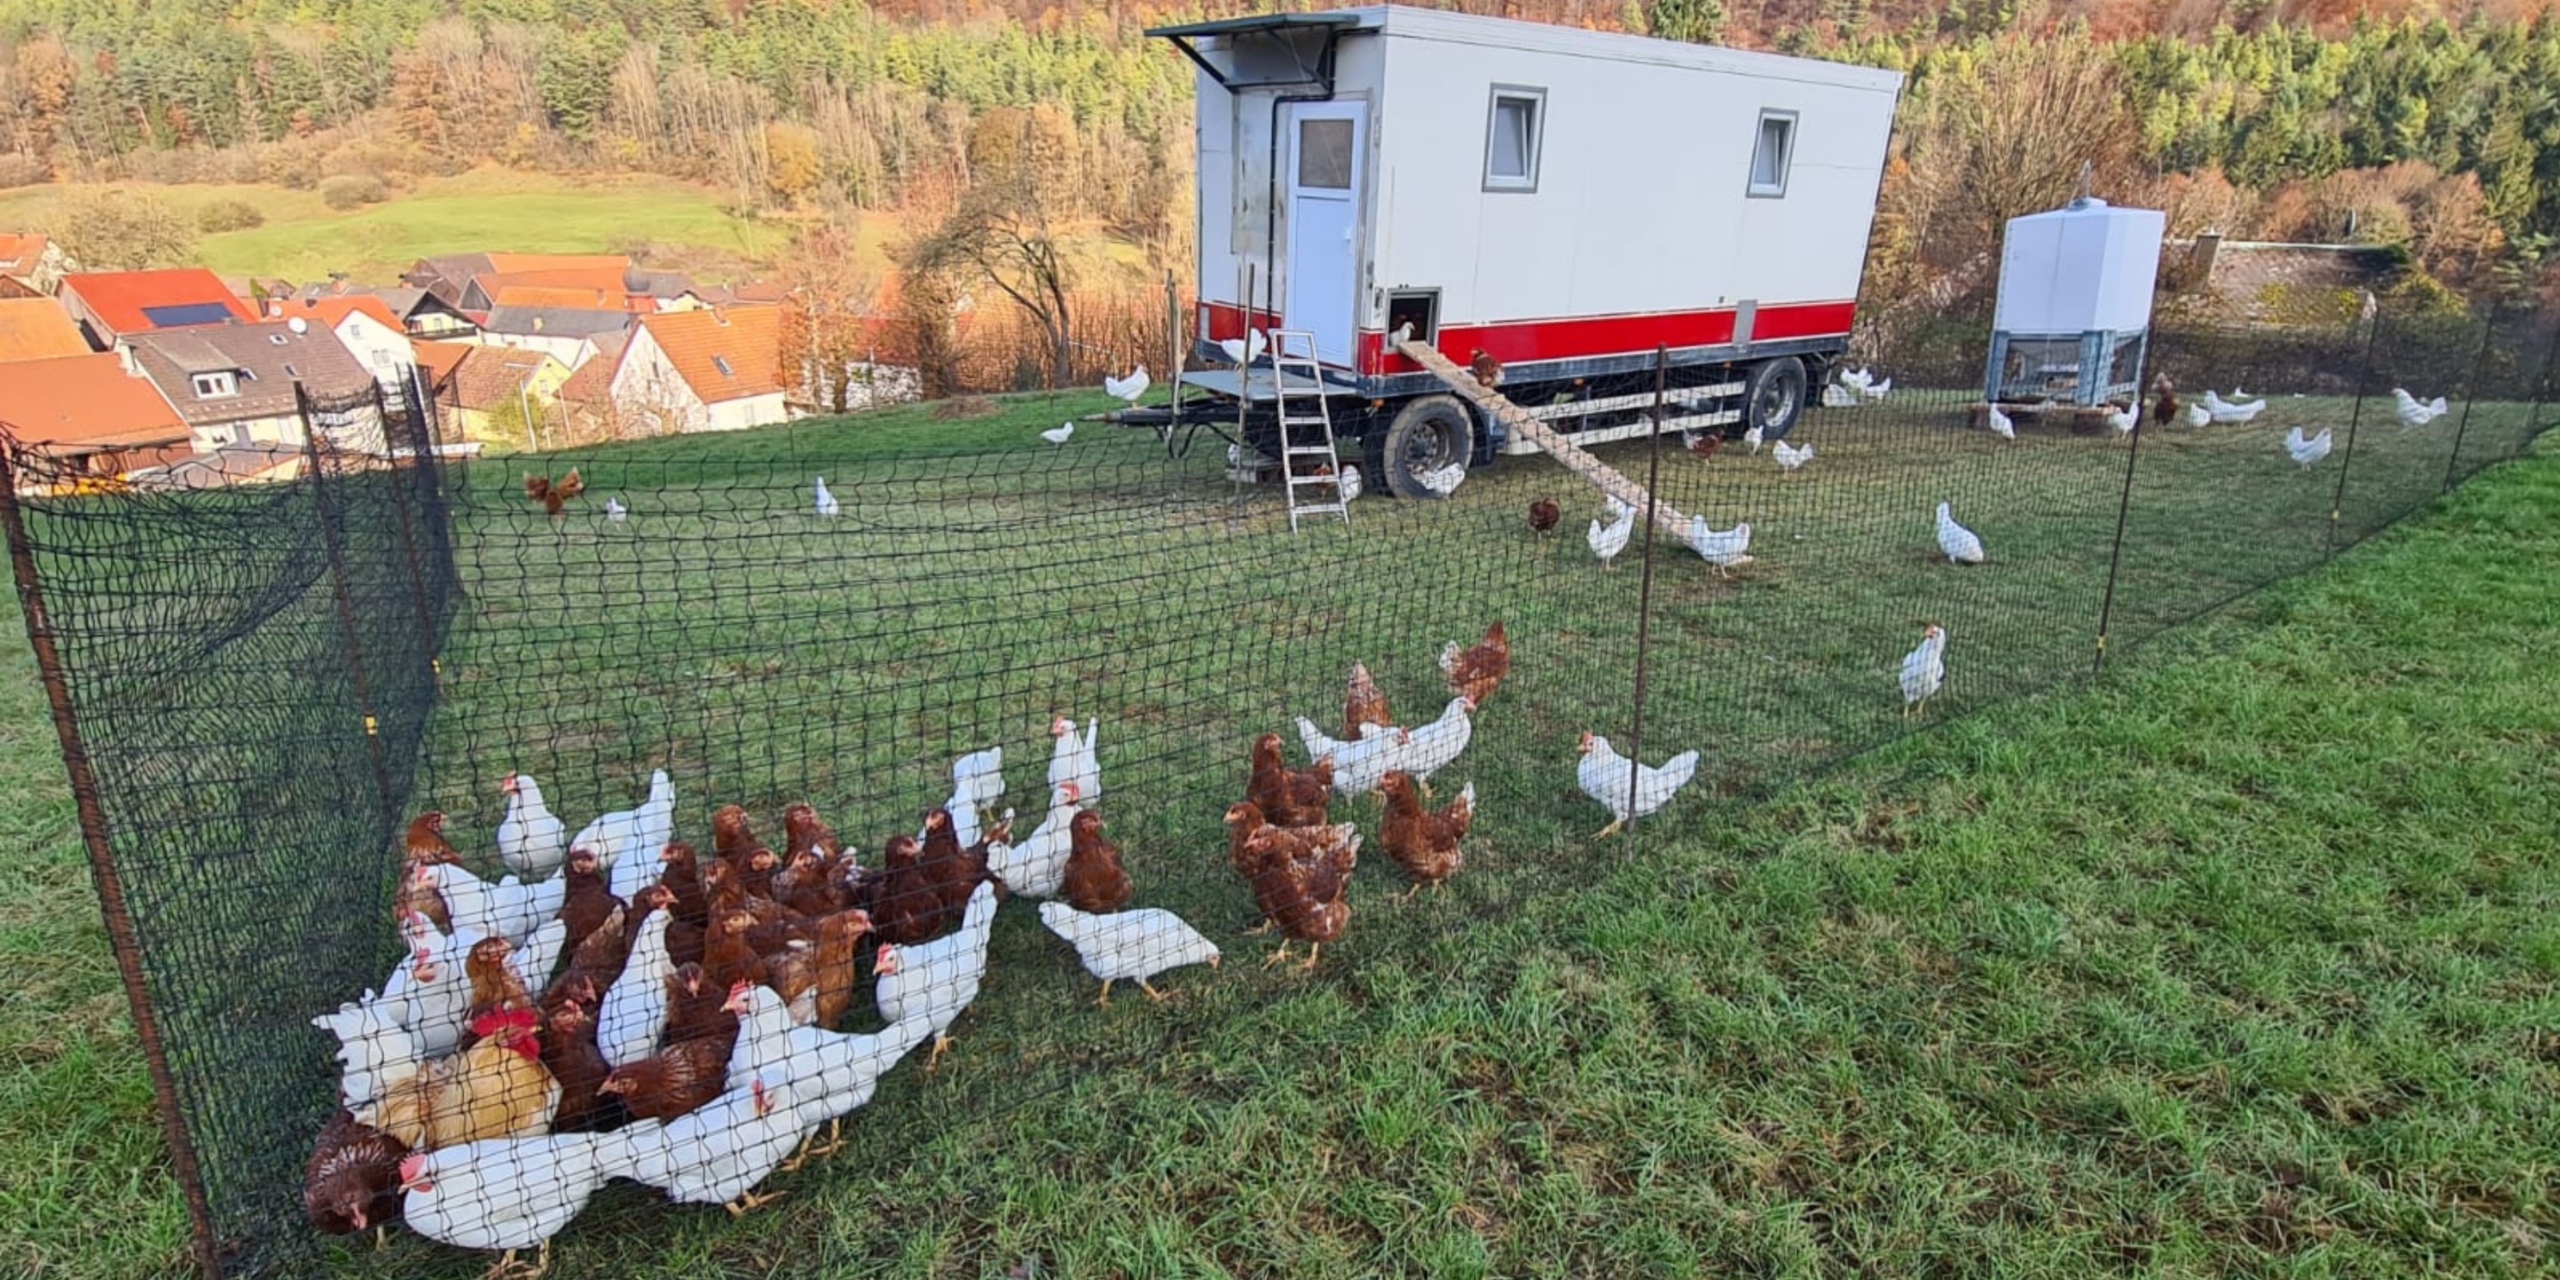 Freilaufende Hühner vor dem Hühnermobil von Tinas Landlädla in Kaspauer.